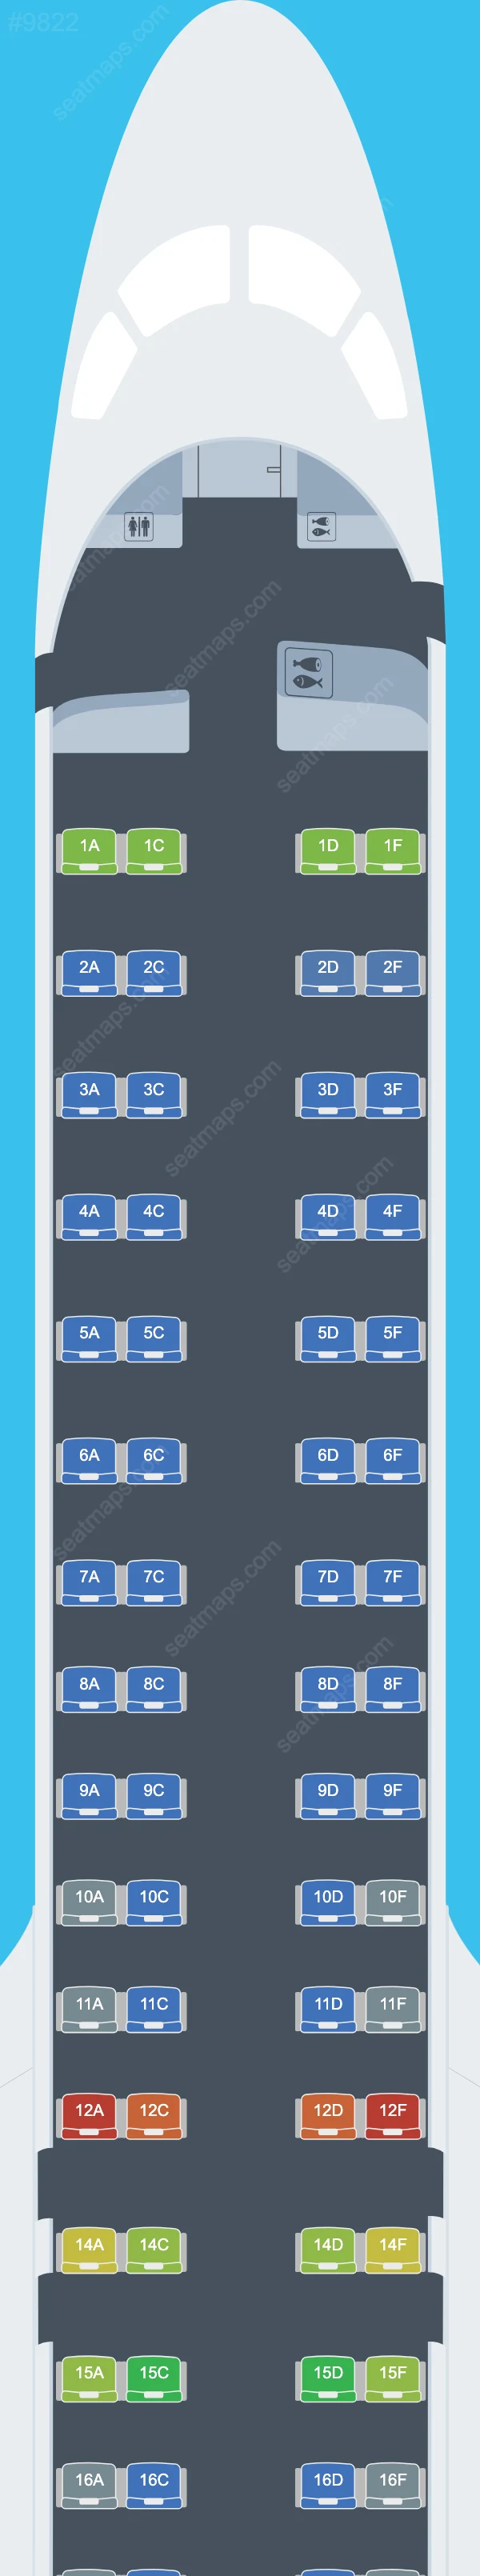 KLM Embraer E195-E2 Seat Maps E195 E2 V.1